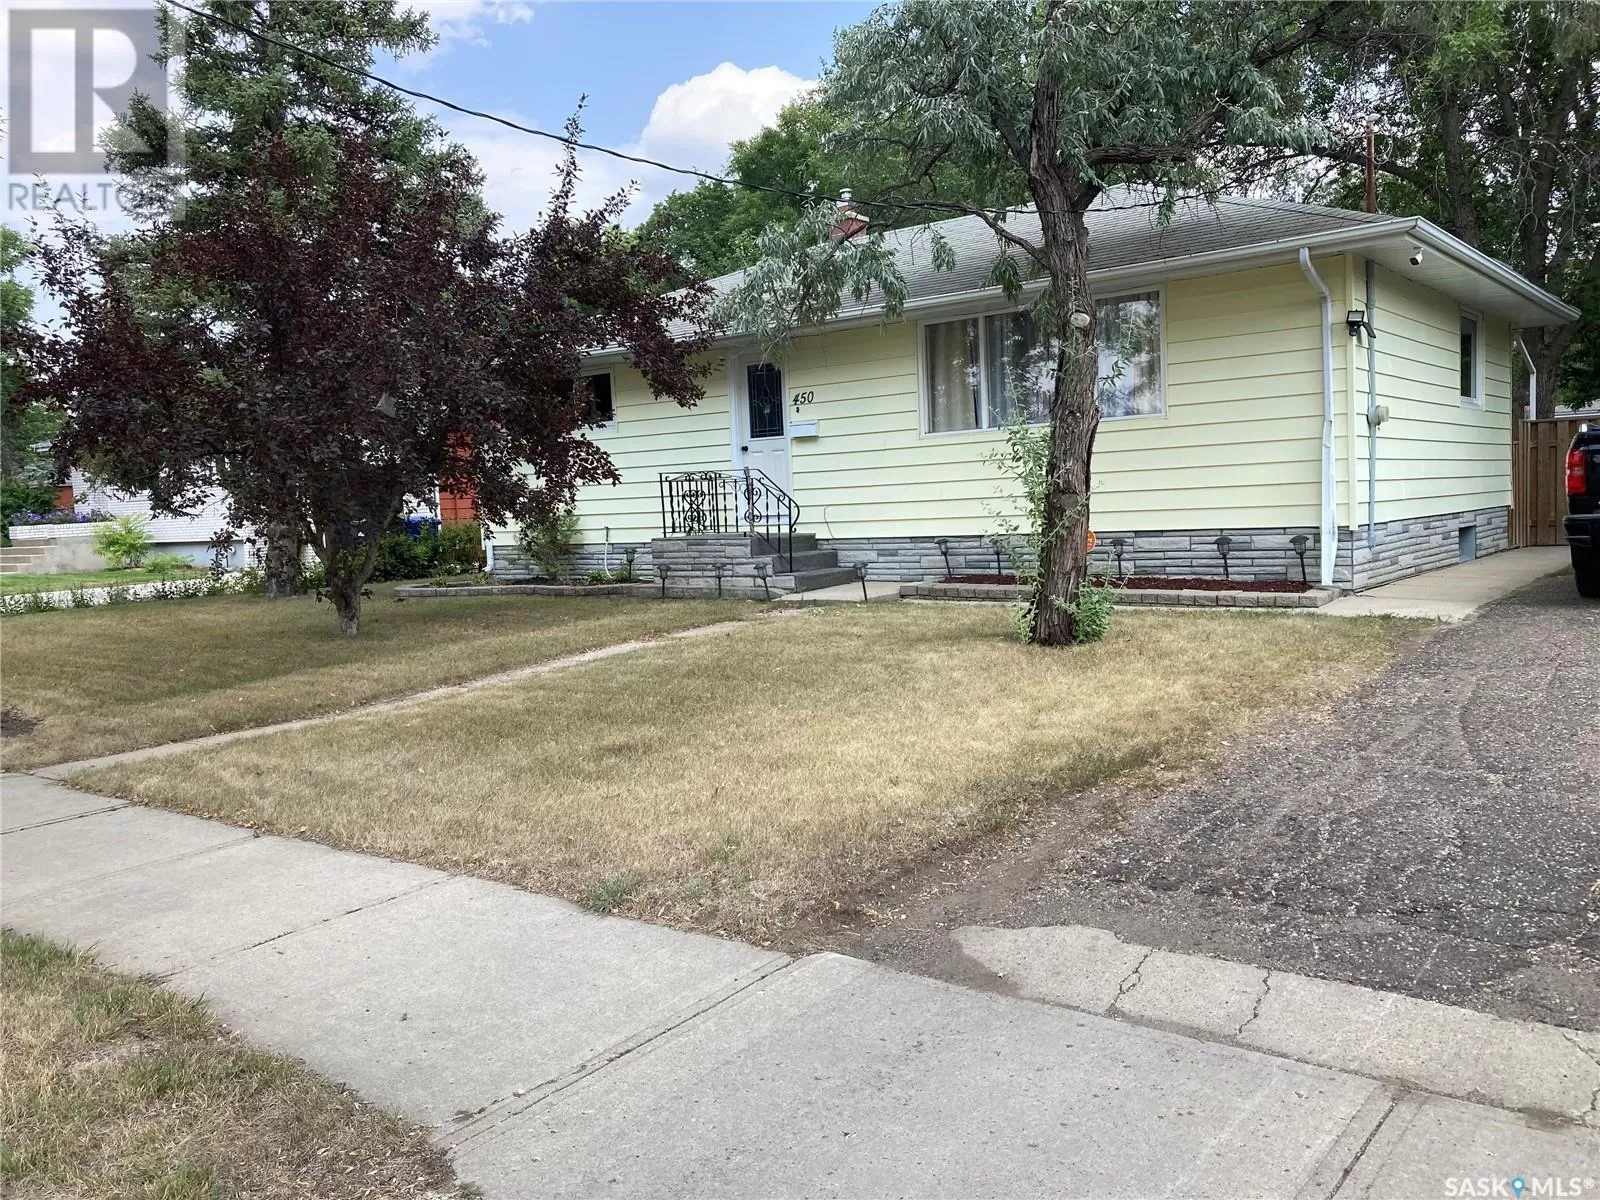 House for rent: 450 4th Street, Weyburn, Saskatchewan S4H 0Y7